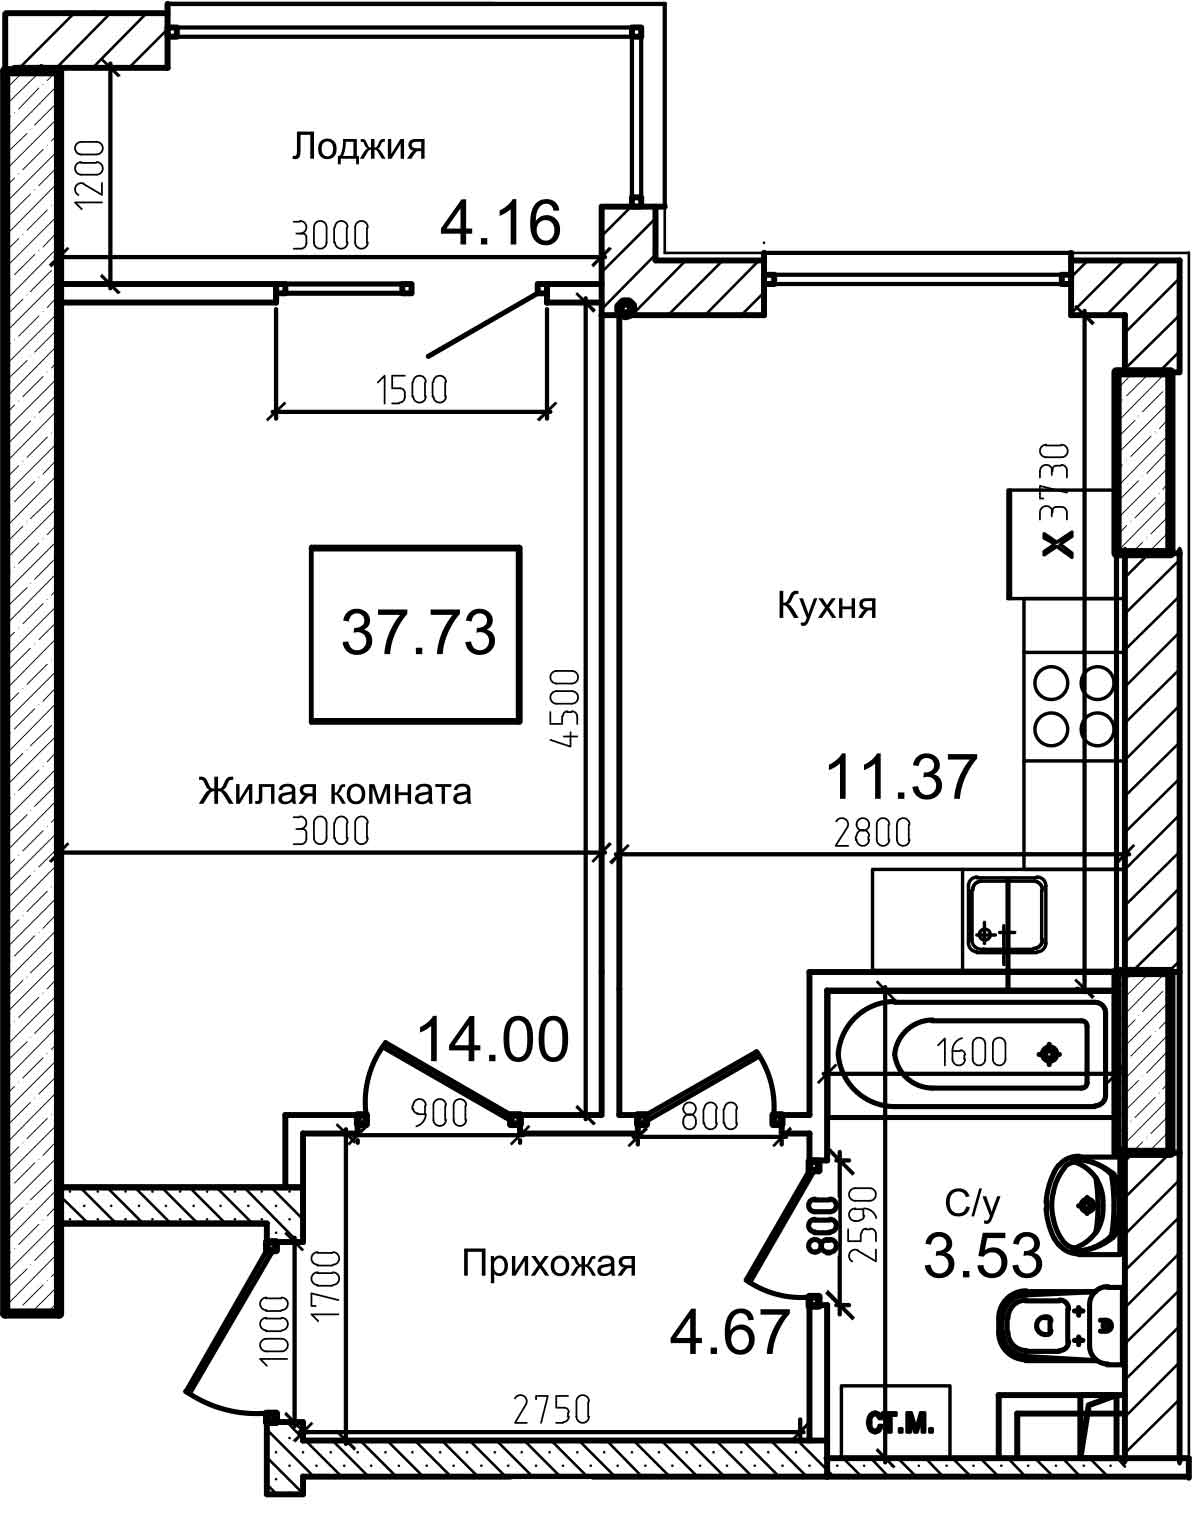 Планировка 1-к квартира площей 37.5м2, AB-08-03/00011.